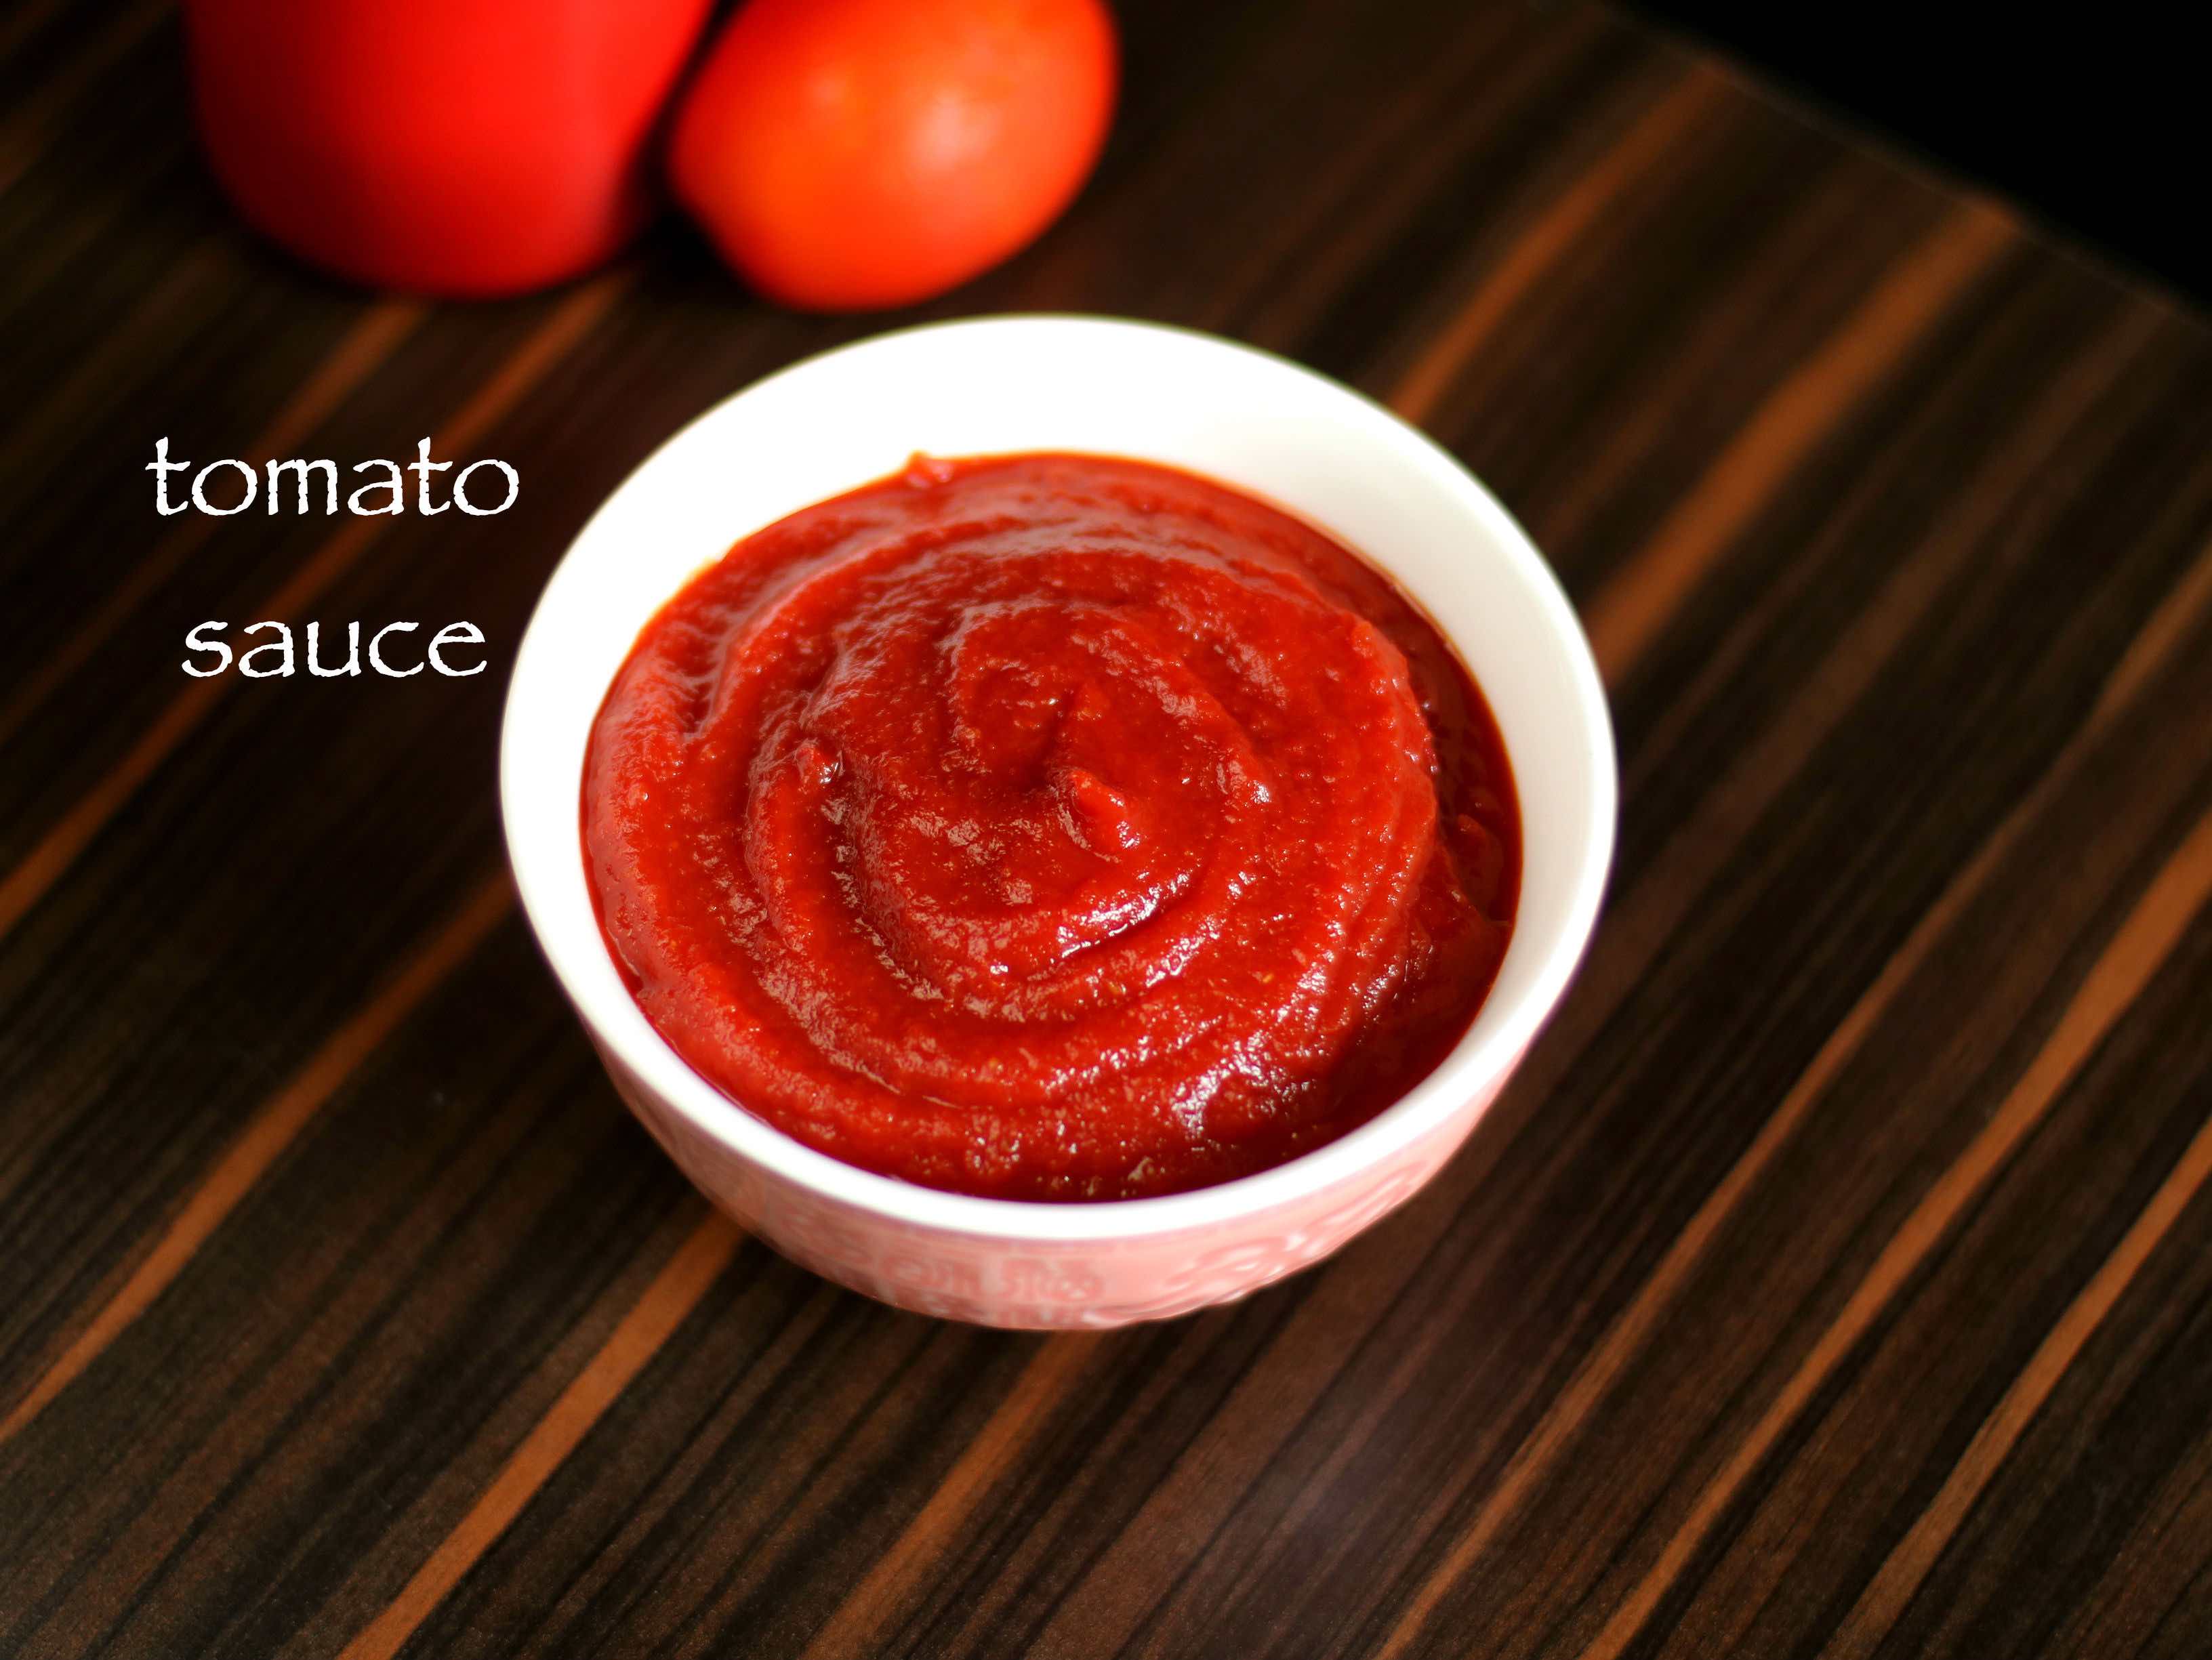 tomato sauce recipe, tomato ketchup recipe